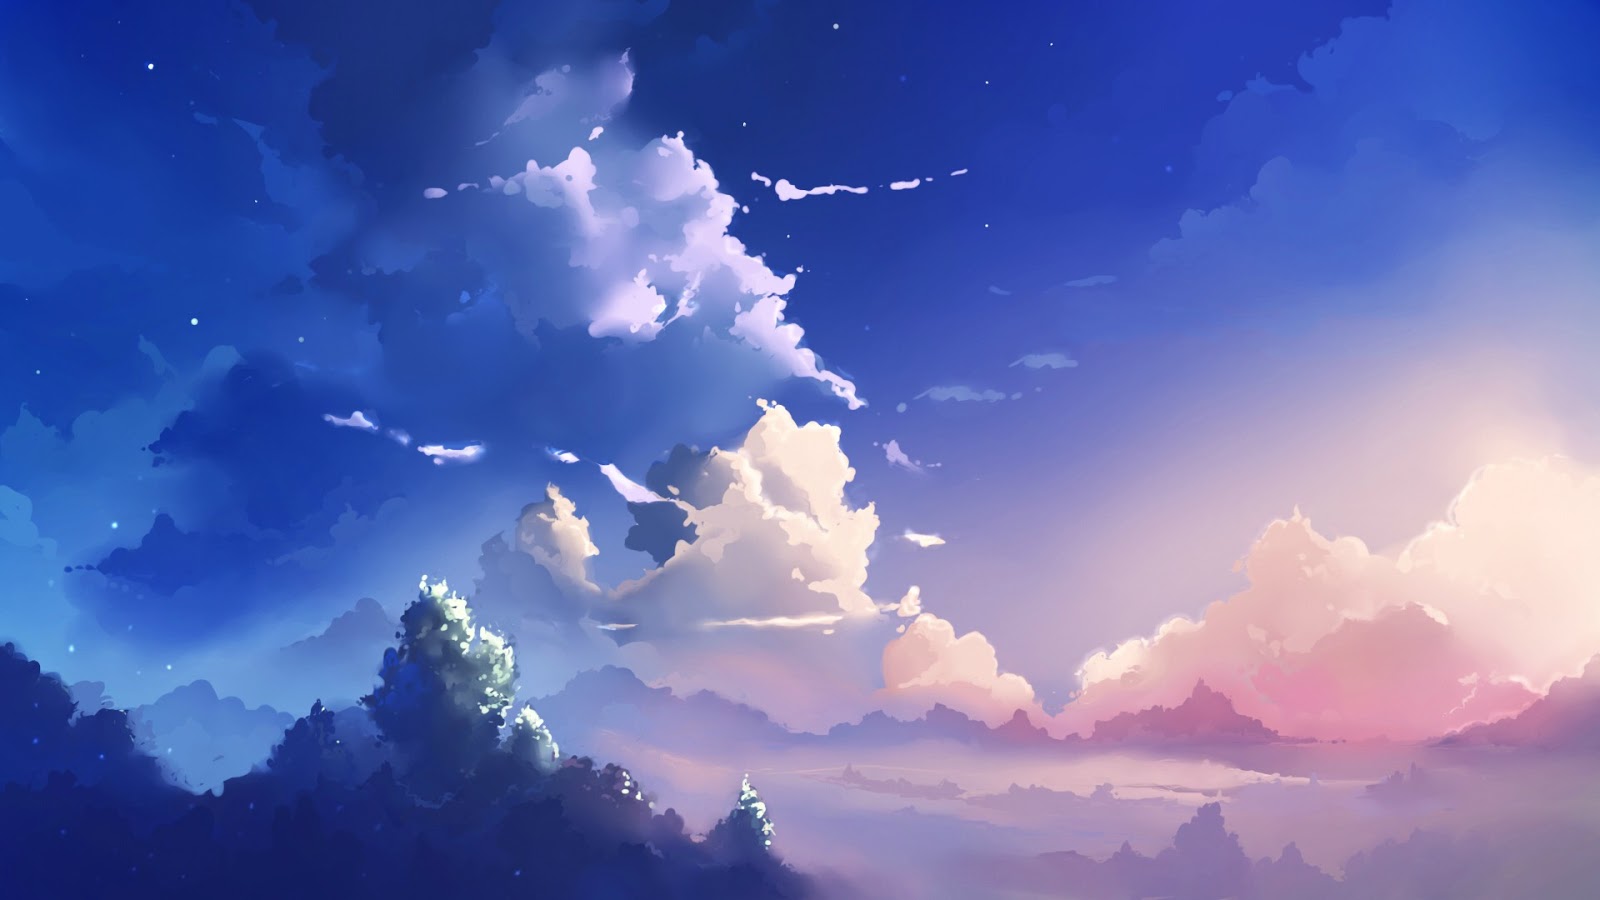 Anime Landscape Sky